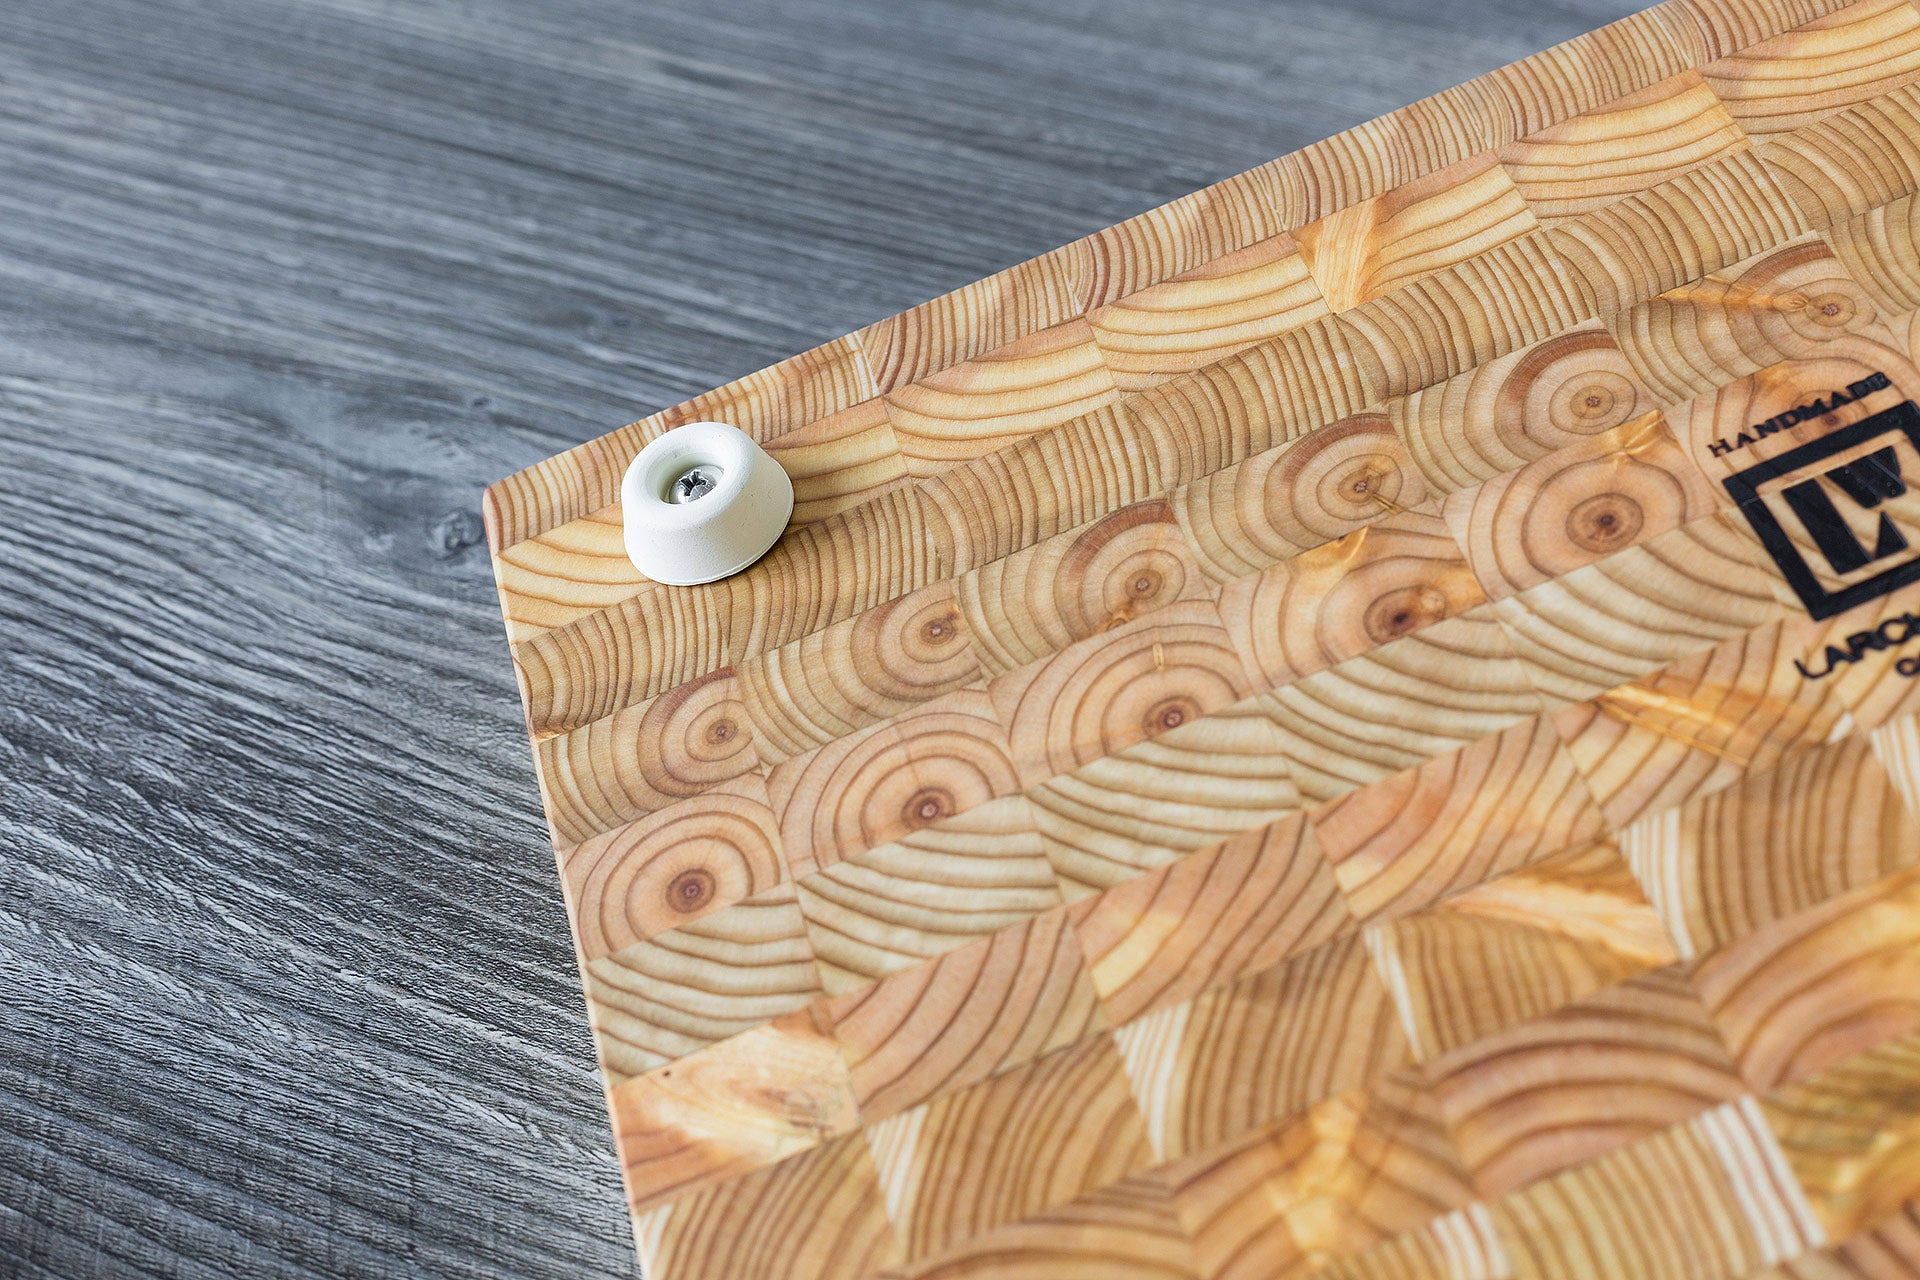 Larchwood Cutting Board (Premium)